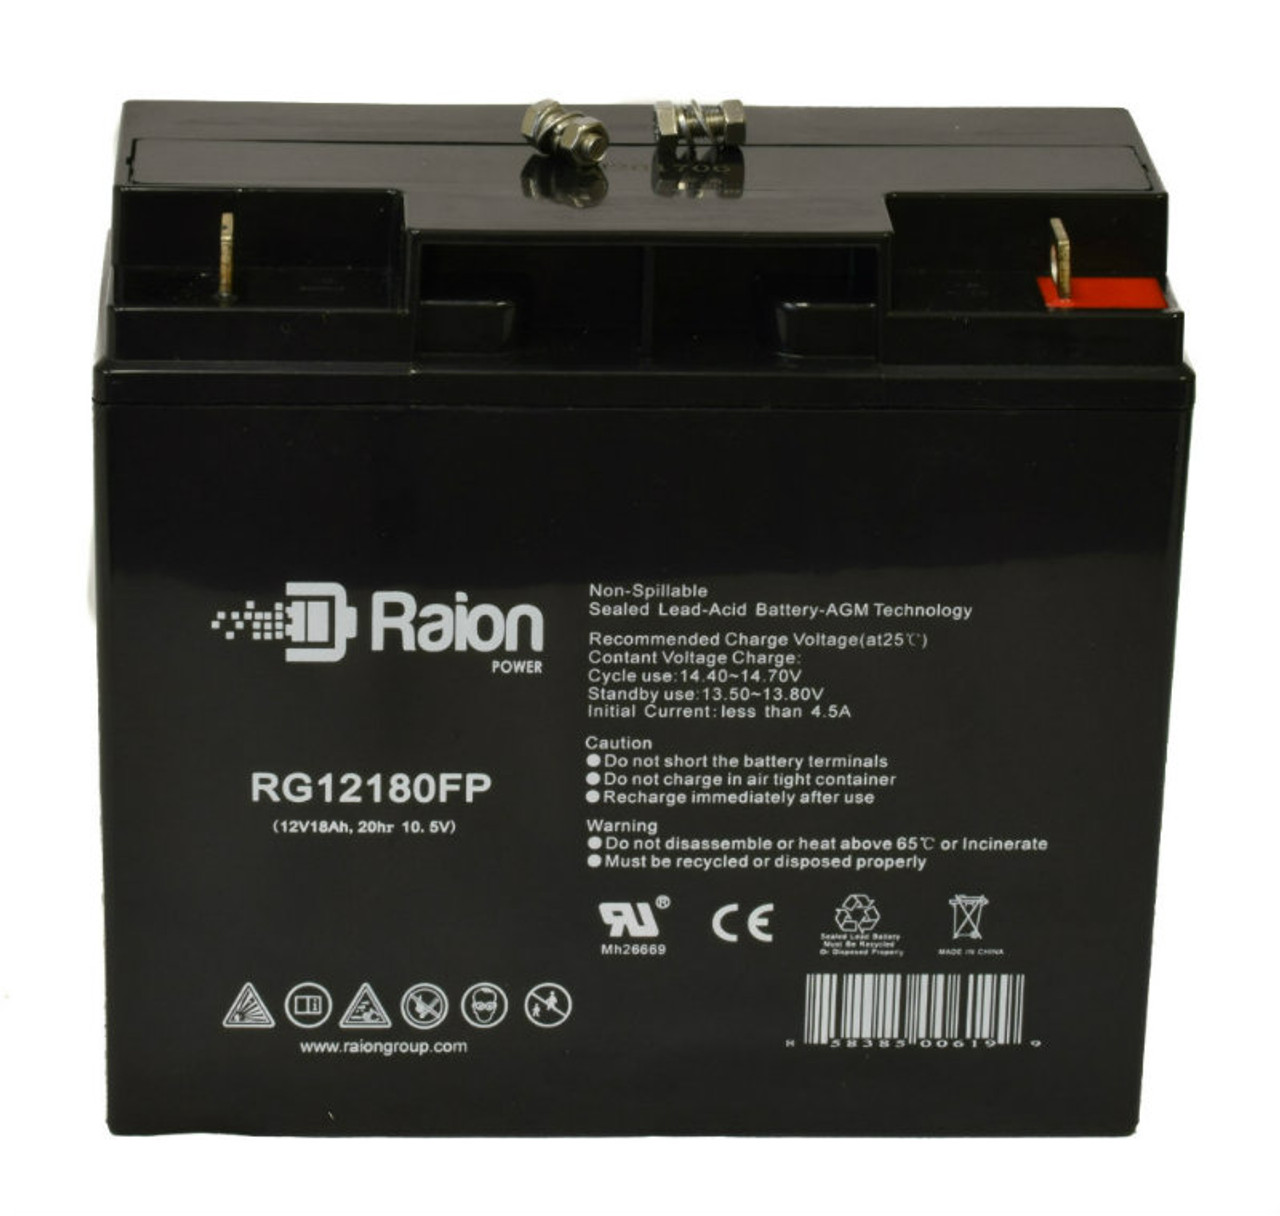 Raion Power RG12180FP 12V 18Ah Lead Acid Battery for Kinghero SJ12V17Ah